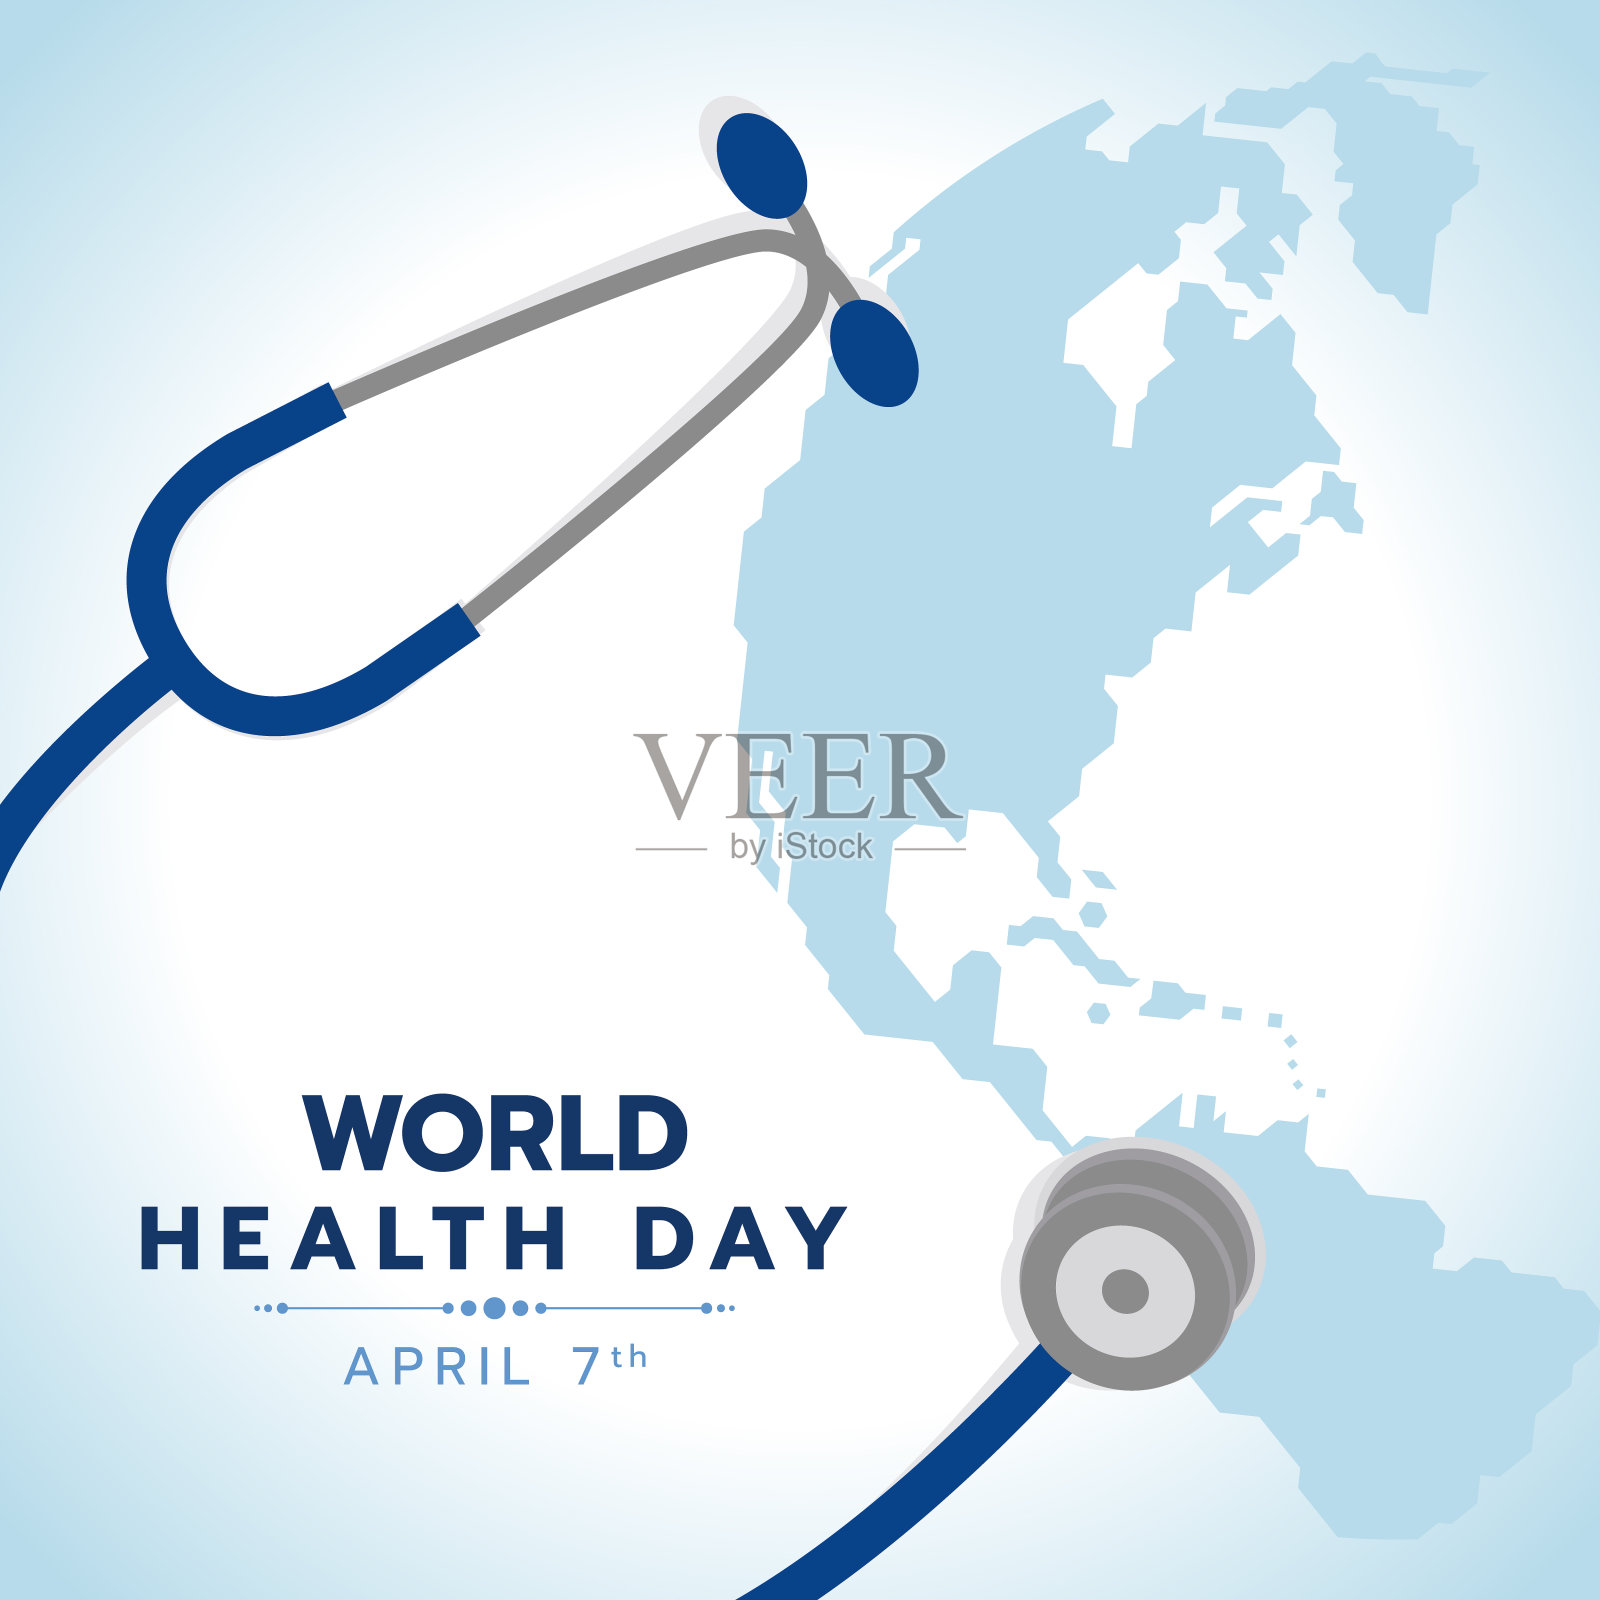 世界卫生日旗帜与蓝色听诊器标志和世界地球地图背景矢量设计插画图片素材